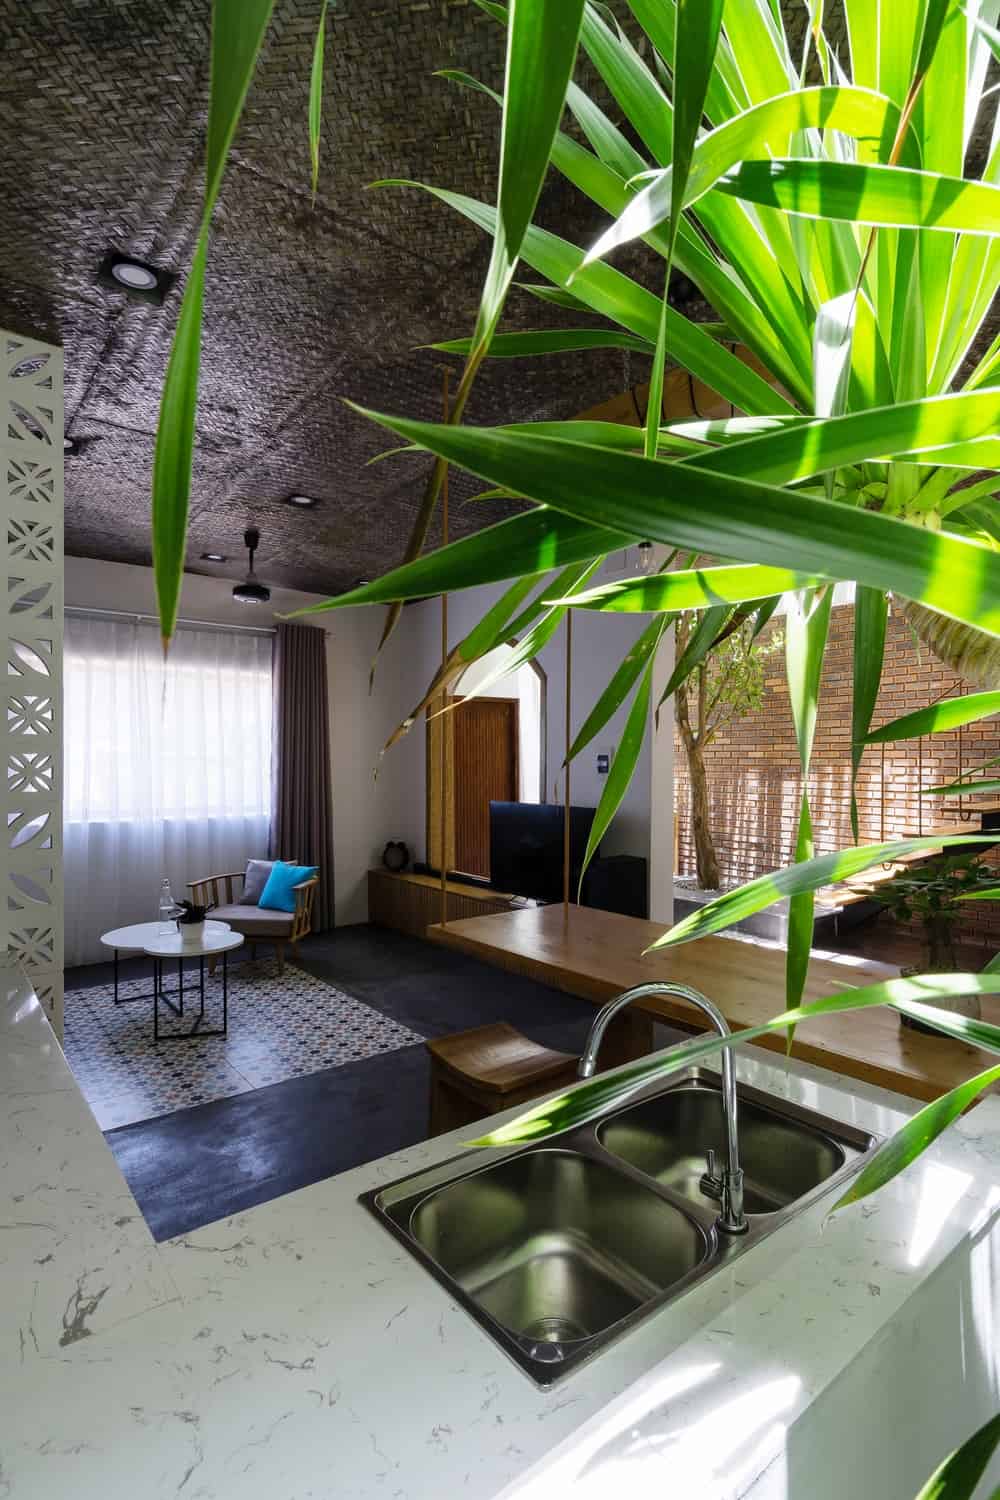 厨房的水槽区装饰着一株大型盆栽，距离厨房几步之遥就是客厅。